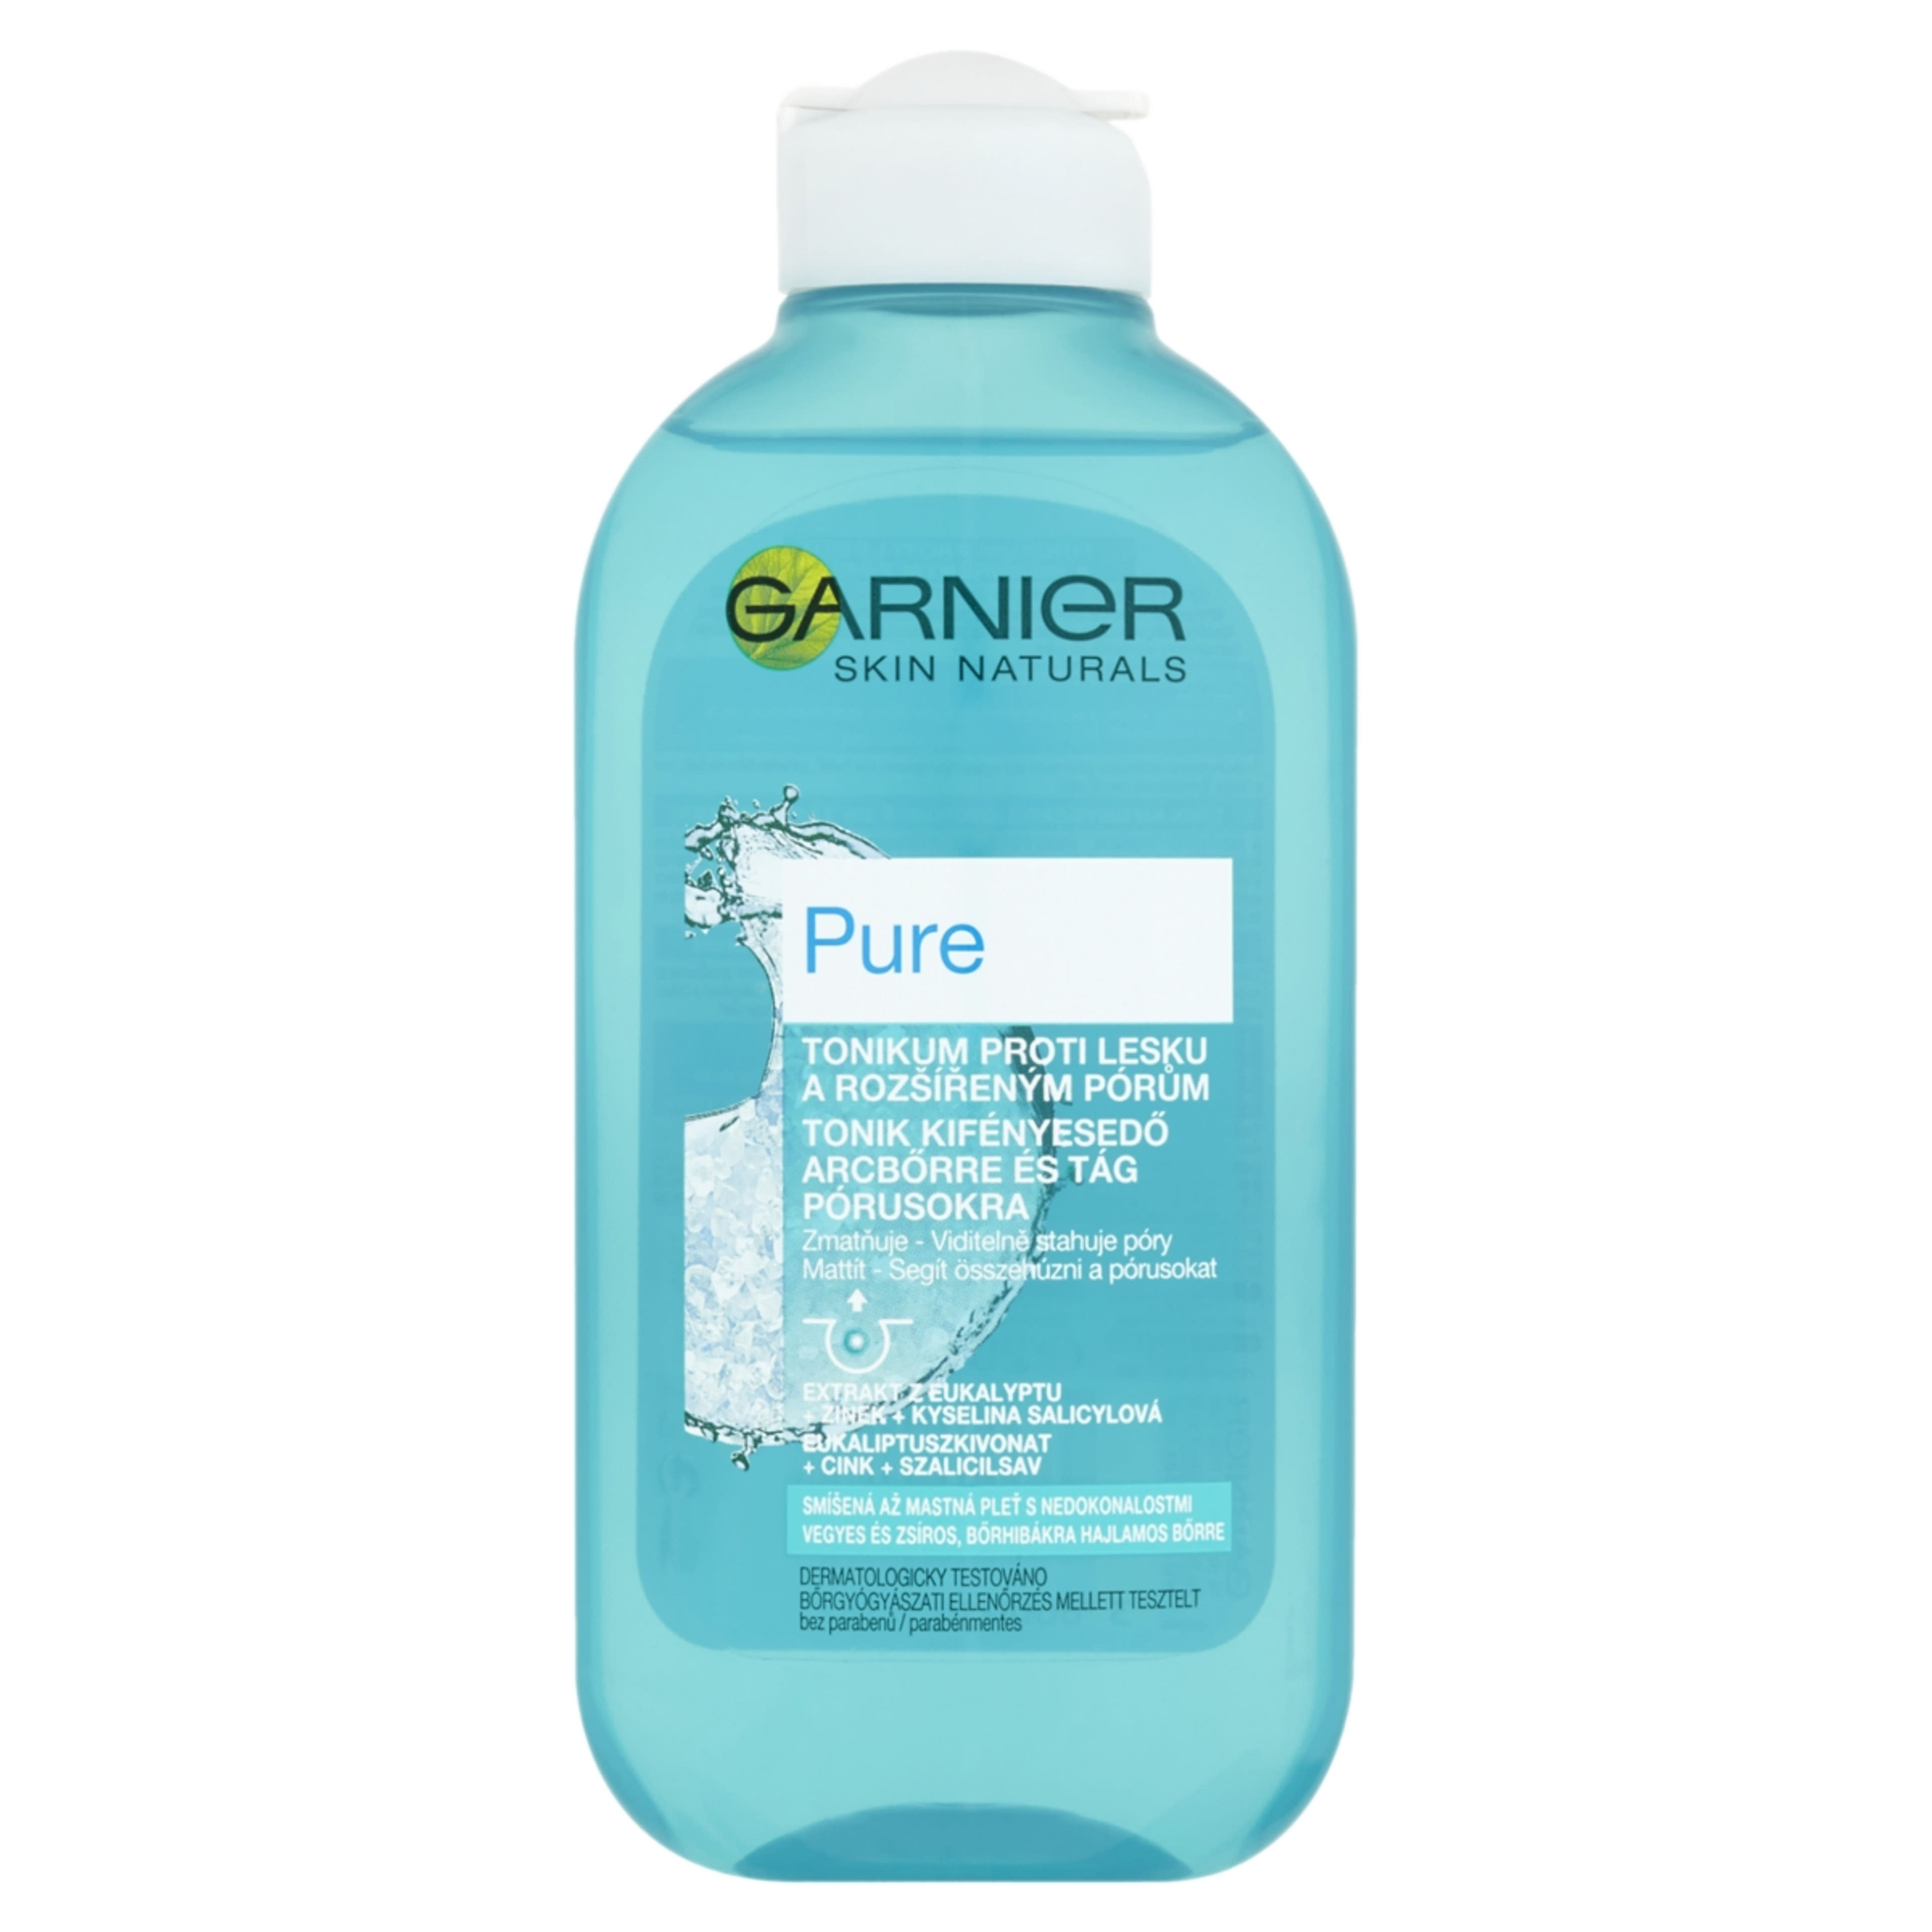 Garnier Skin Naturals Pure Tonik Kifényesedő Arcbőrre És Tágult Pórusokra - 200 ml